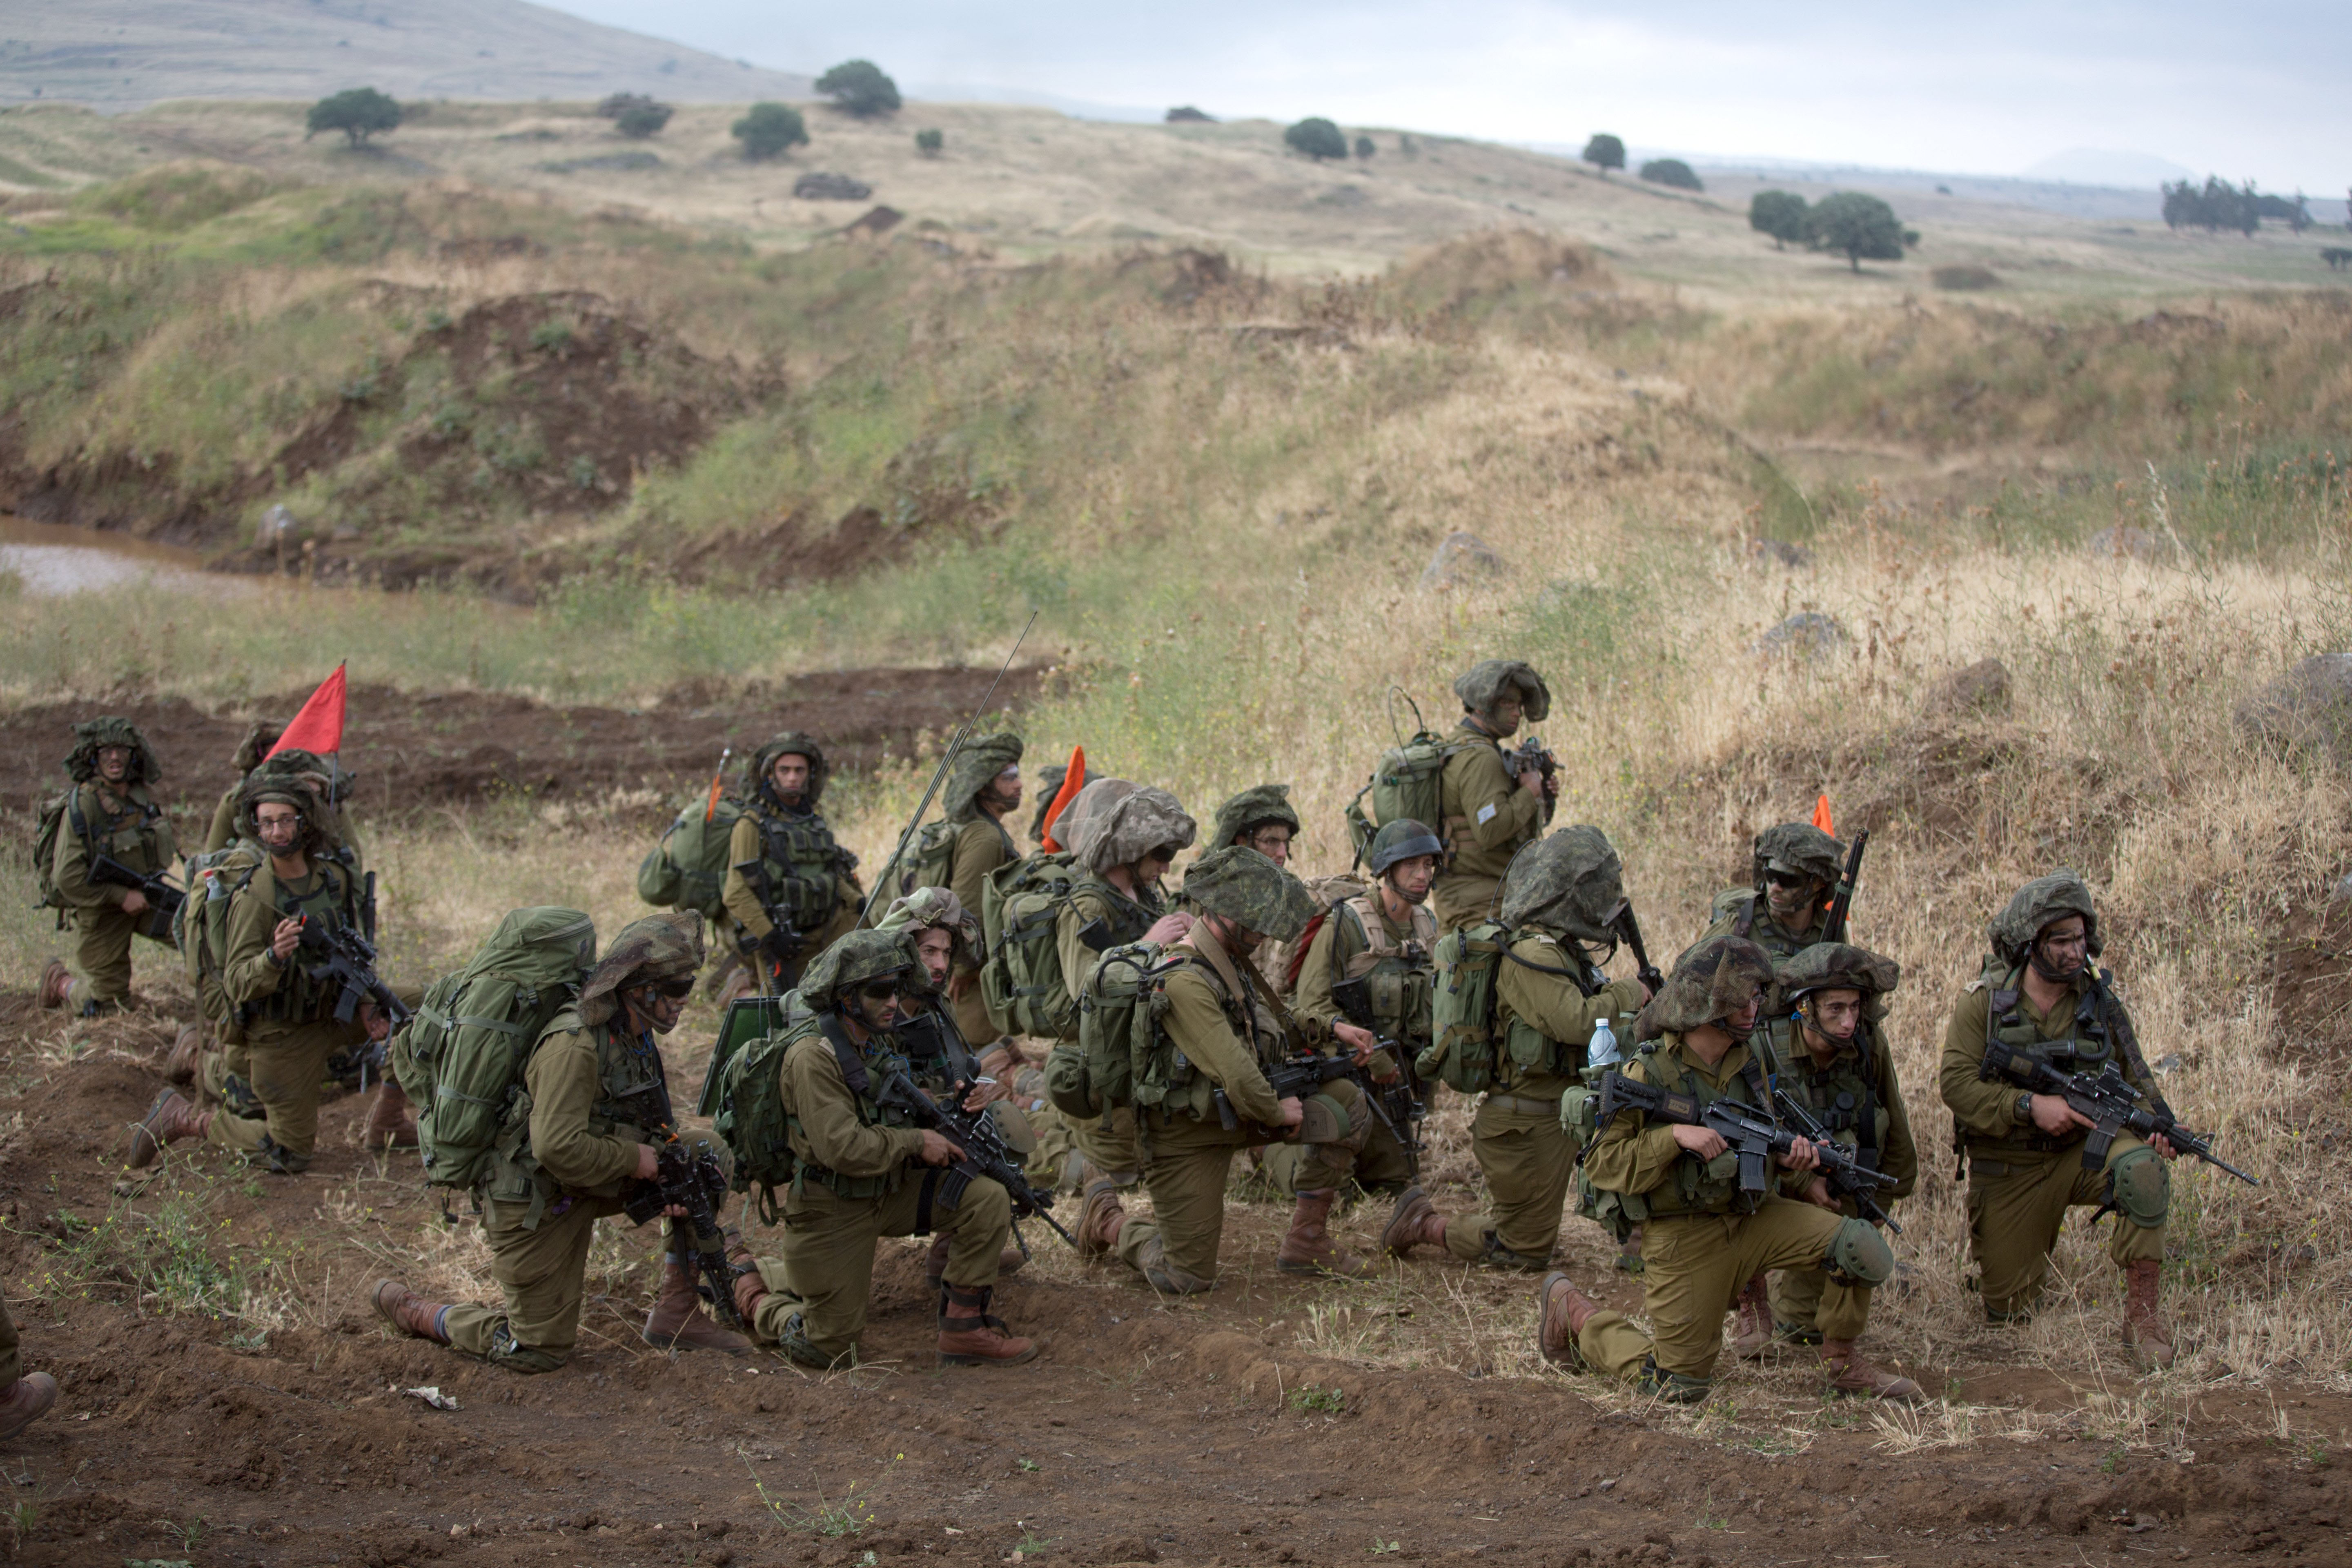 Le bataillon ultra-orthodoxe « Netzah Yehuda » serait notamment dans le viseur de Washington, selon la presse israélienne. AFP/MENAHEM KAHANA.